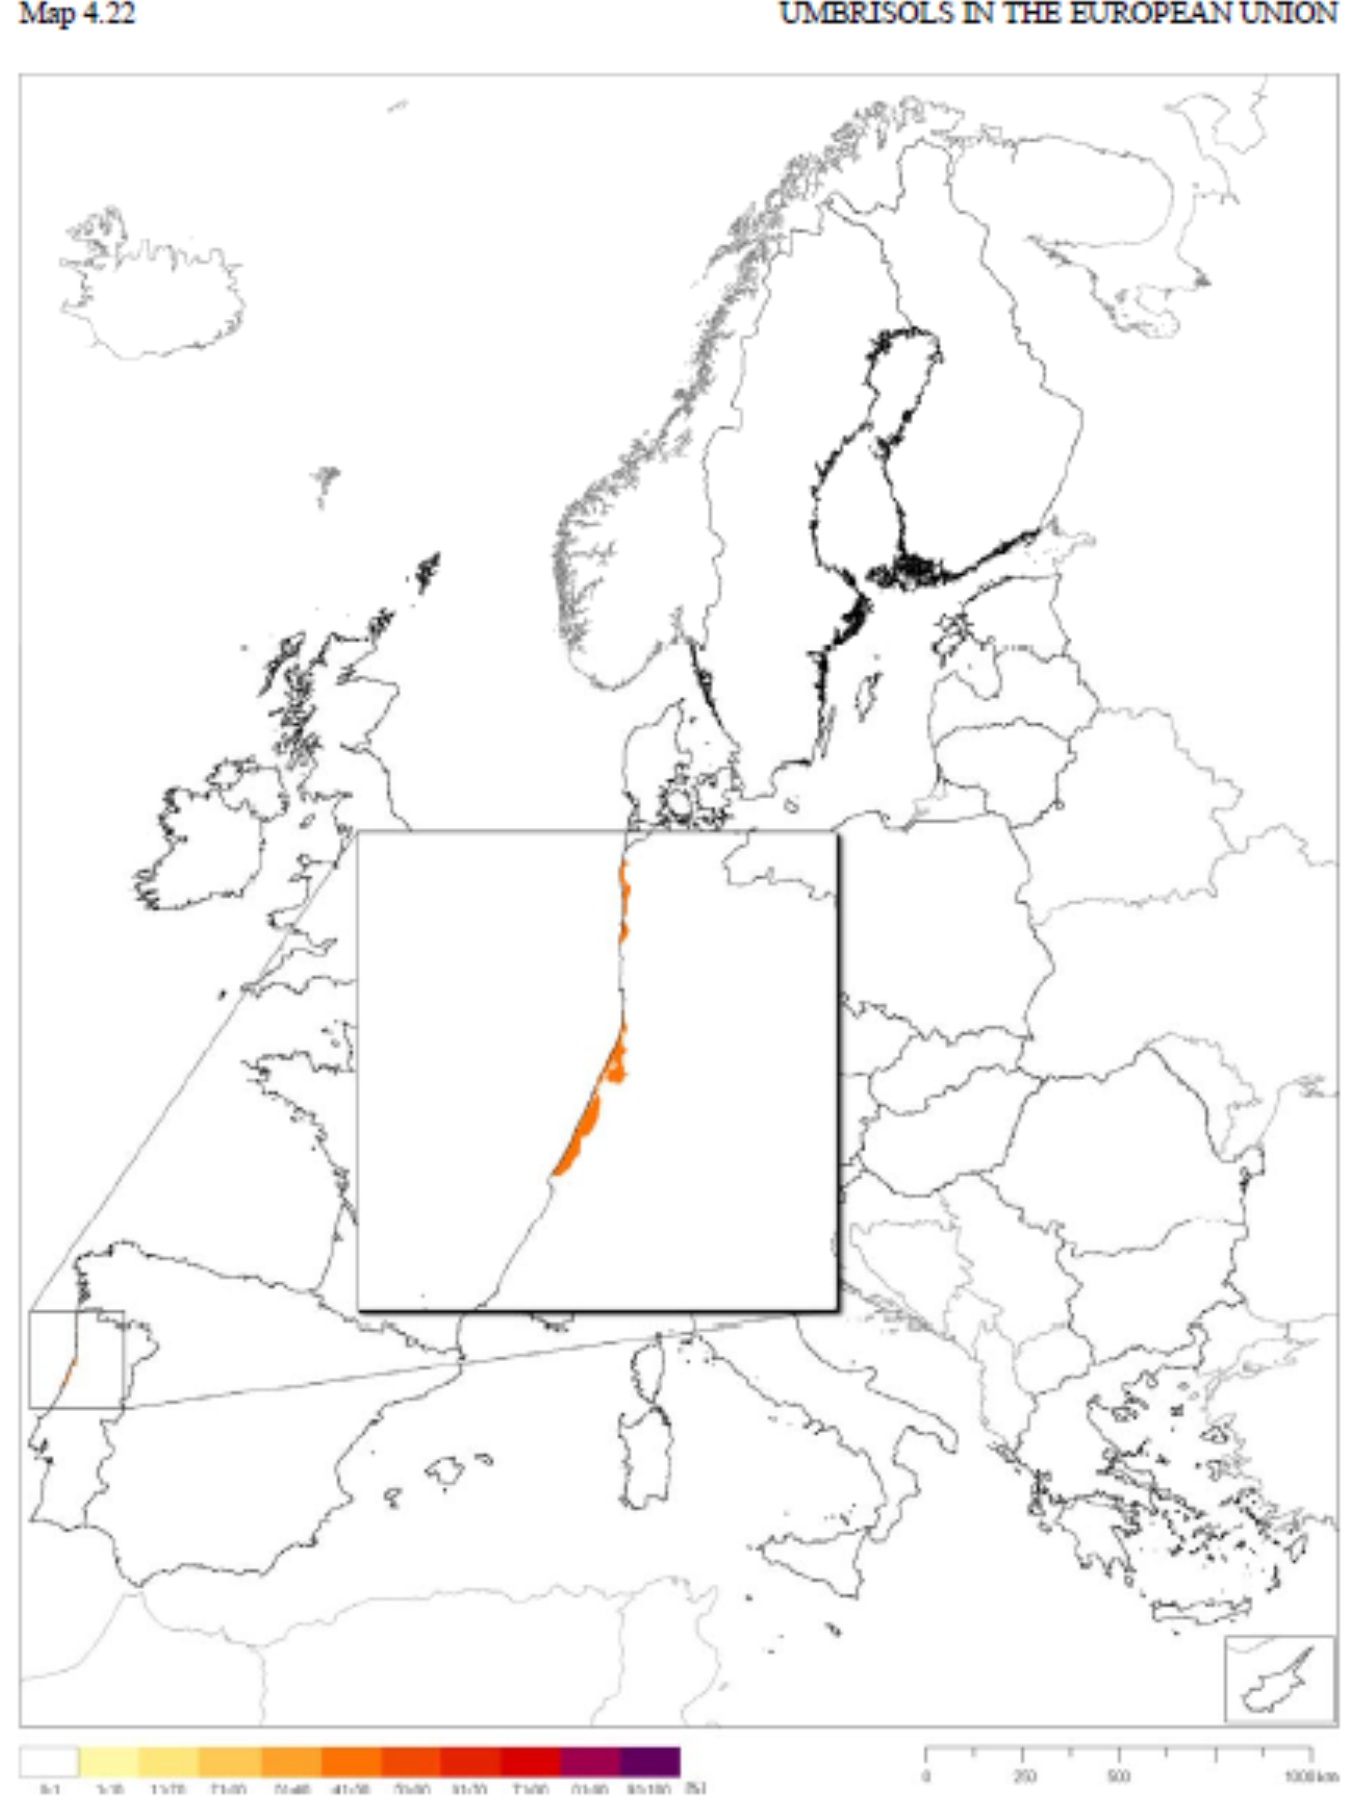 umbrisols-europe-map-esb